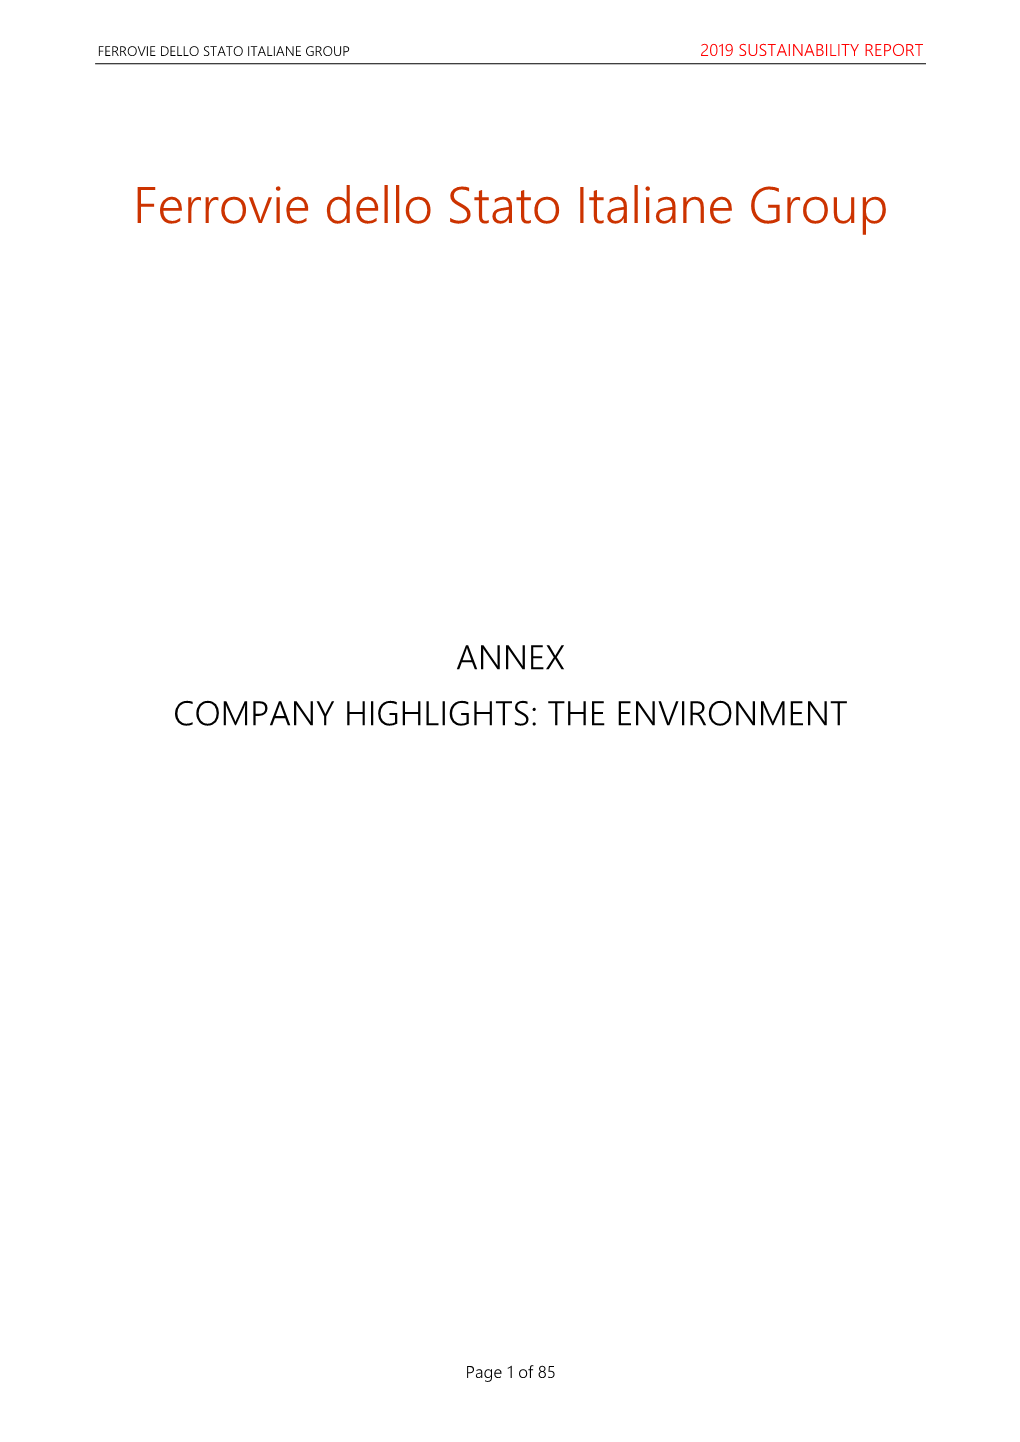 Ferrovie Dello Stato Italiane Group 2019 Sustainability Report